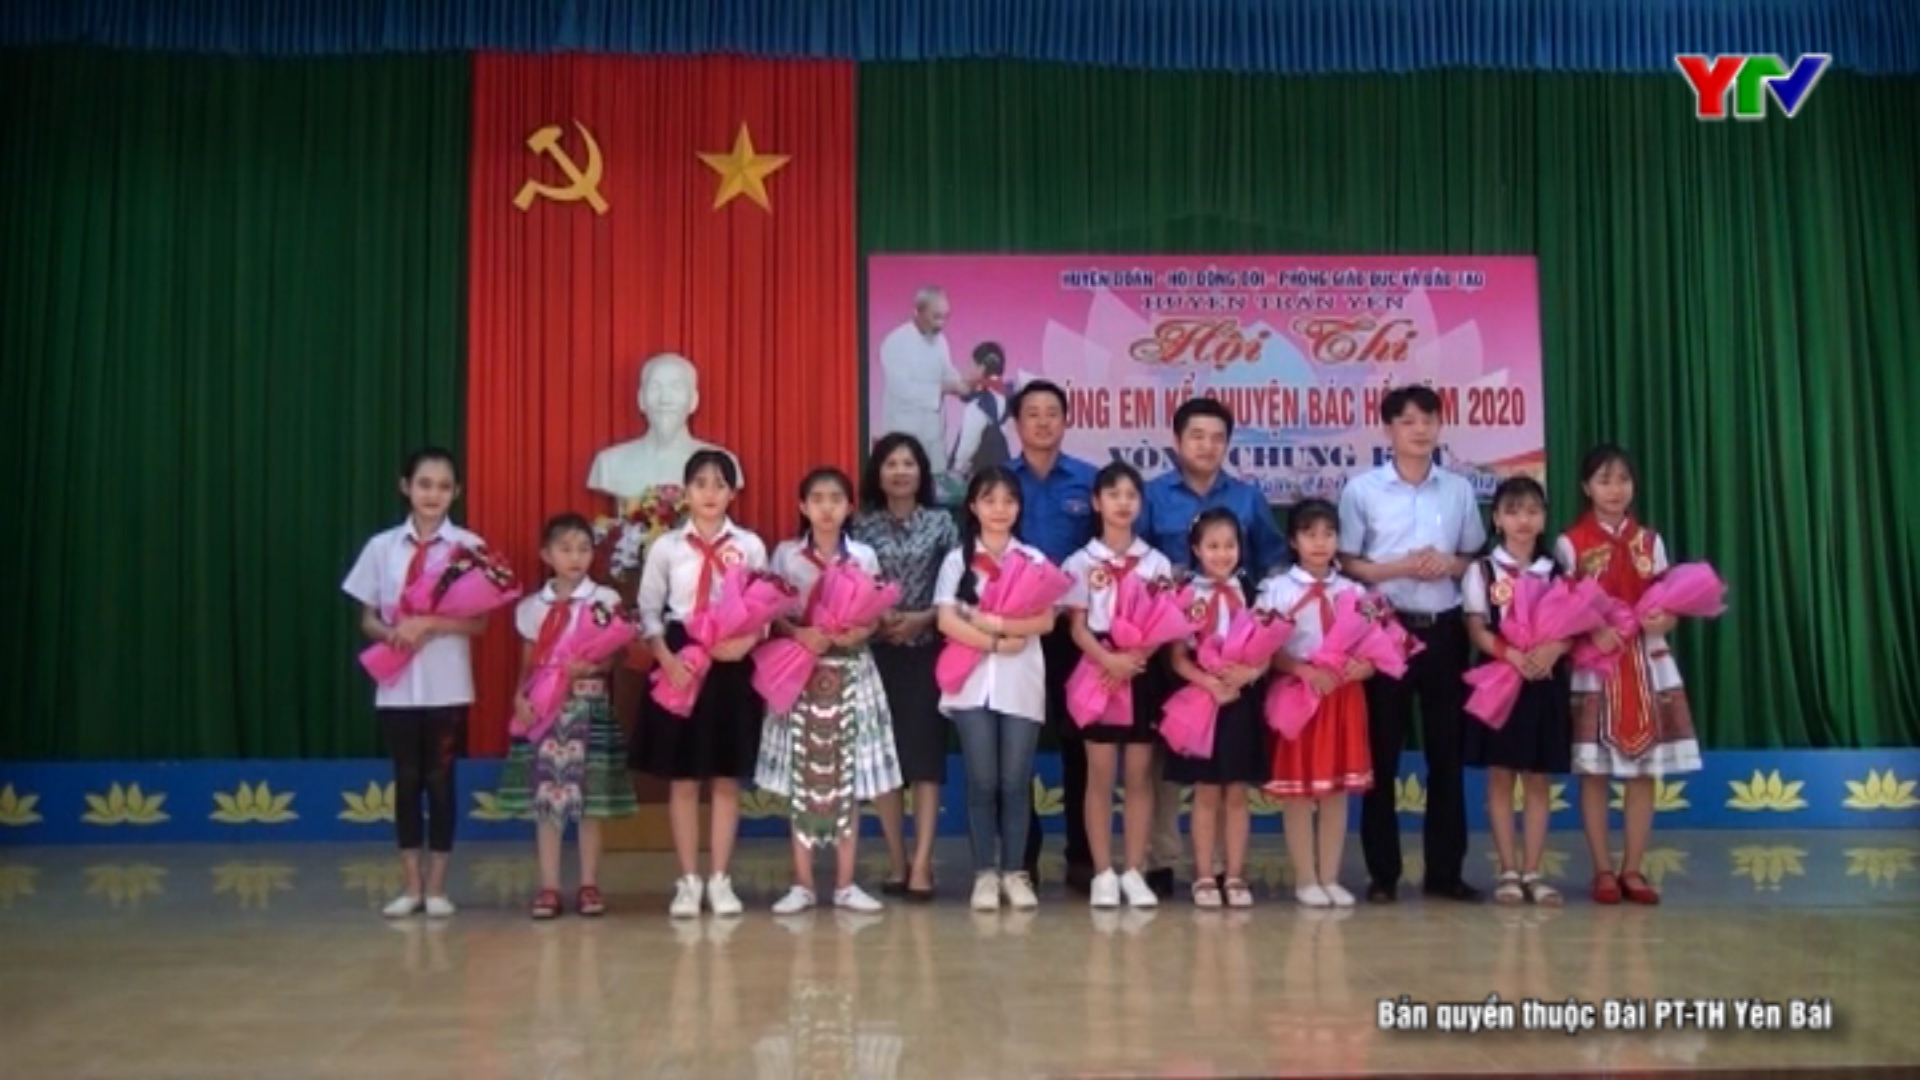 Huyện Trấn Yên tổ chức chung kết Hội thi “Chúng em kể chuyện Bác Hồ” năm 2020